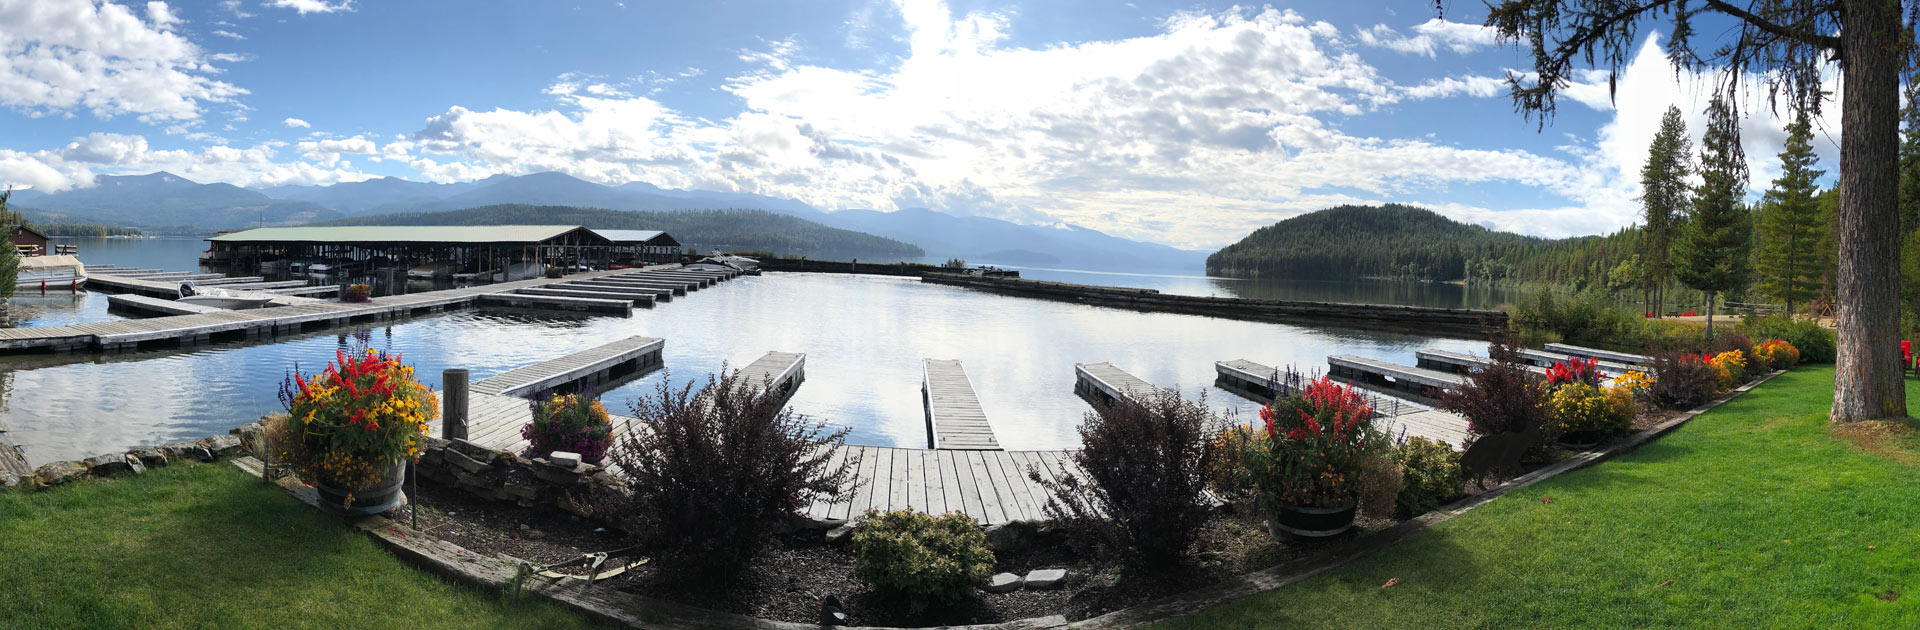 View at Elkins Resort at Priest Lake